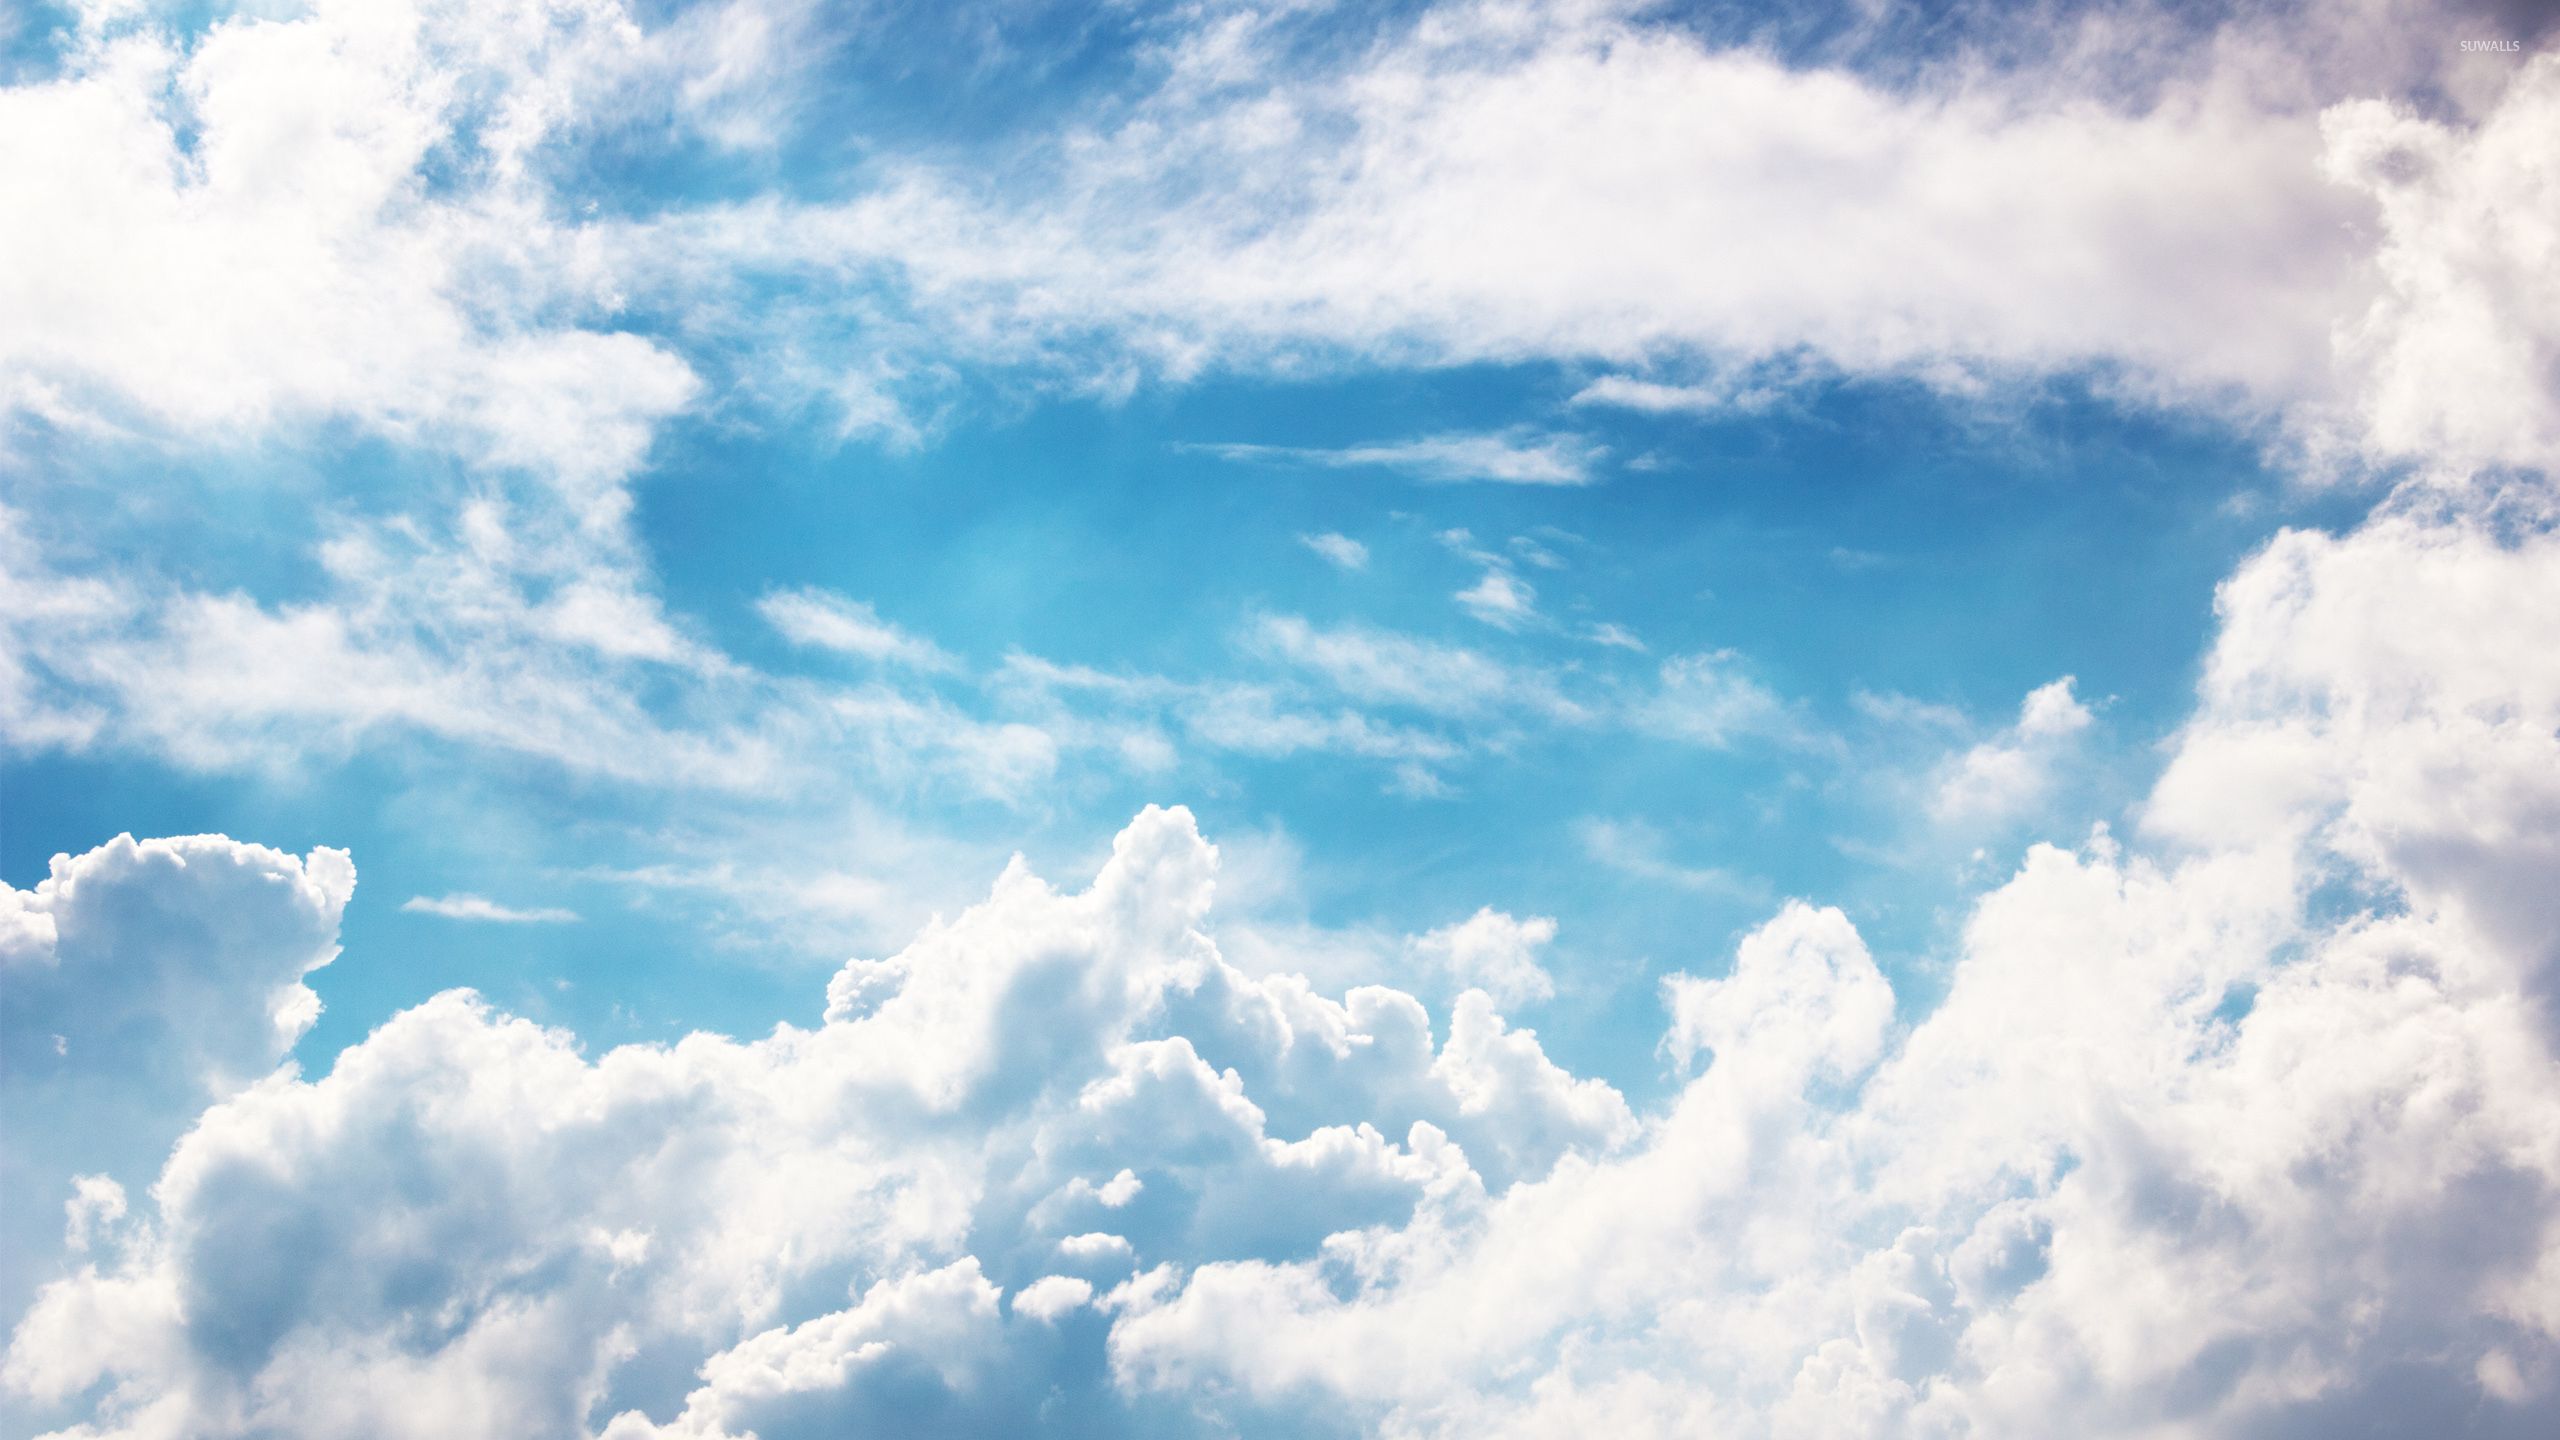 Fuzzy clouds wallpaper - Naturaleza fondos de pantalla - # 46322